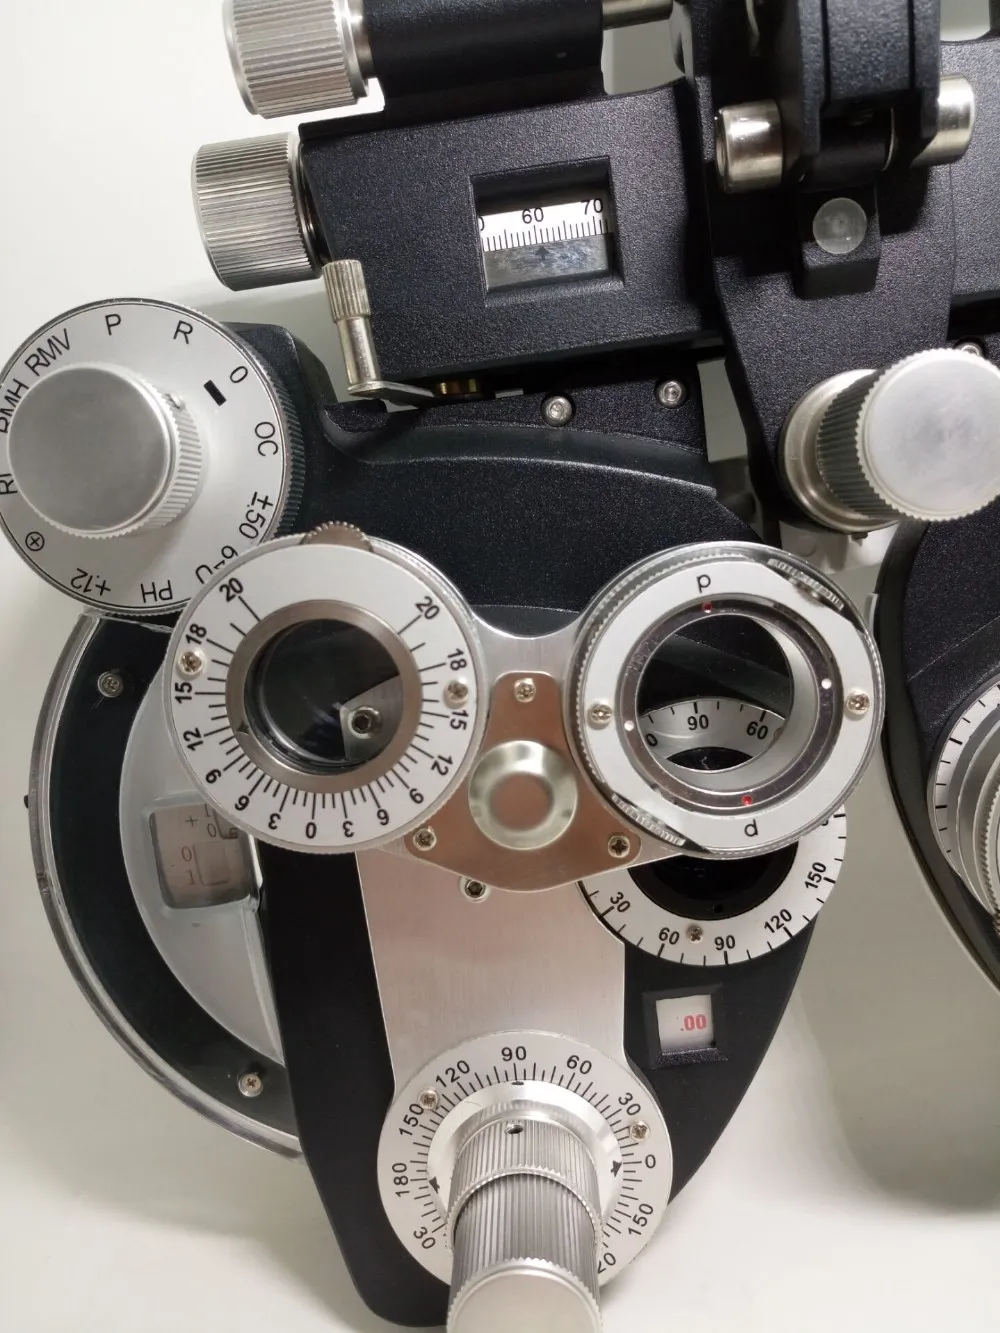 FR-02 ручной phoropter офтальмологический view тестер зрения инструмент преломления с металл и черный цвет